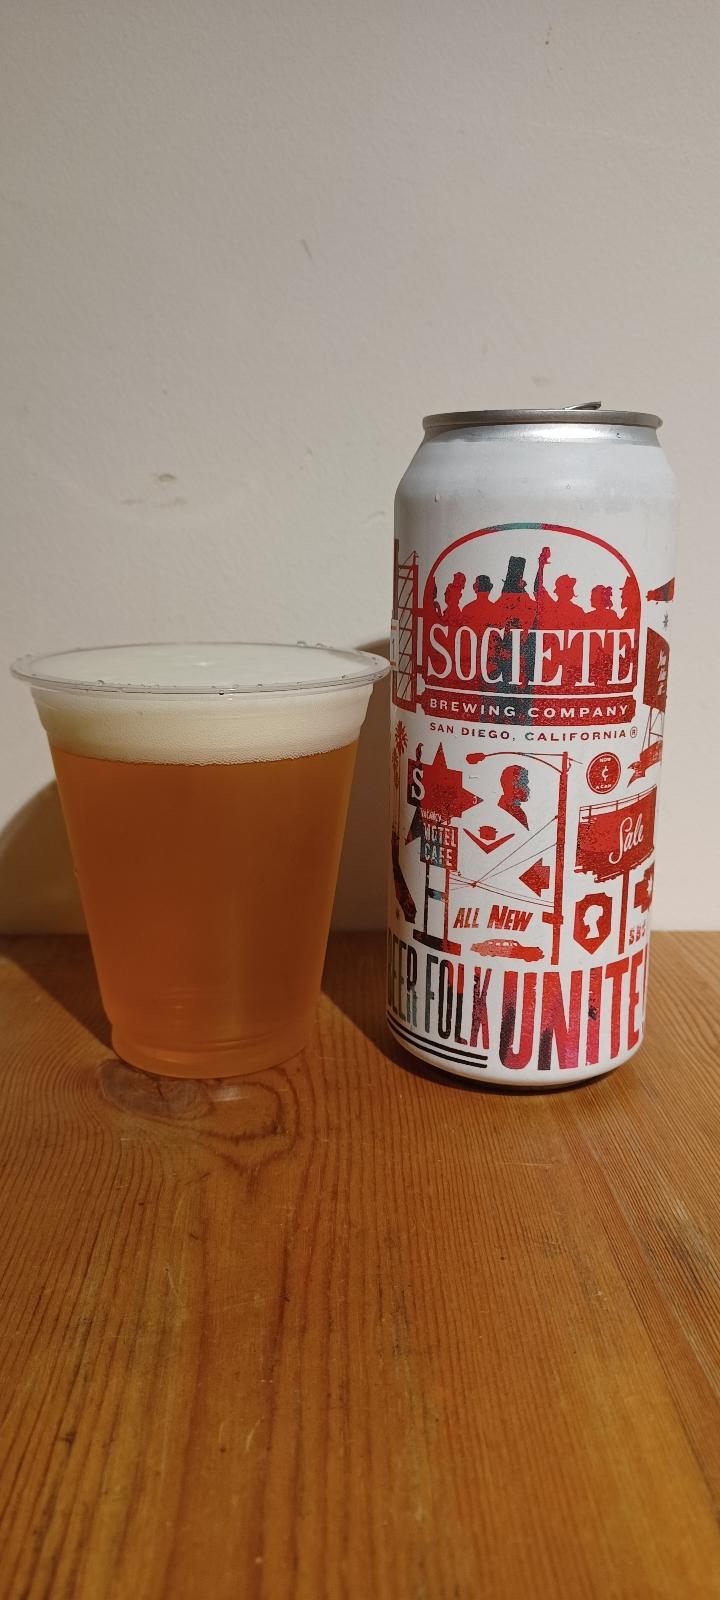 Beer Folk Unite!